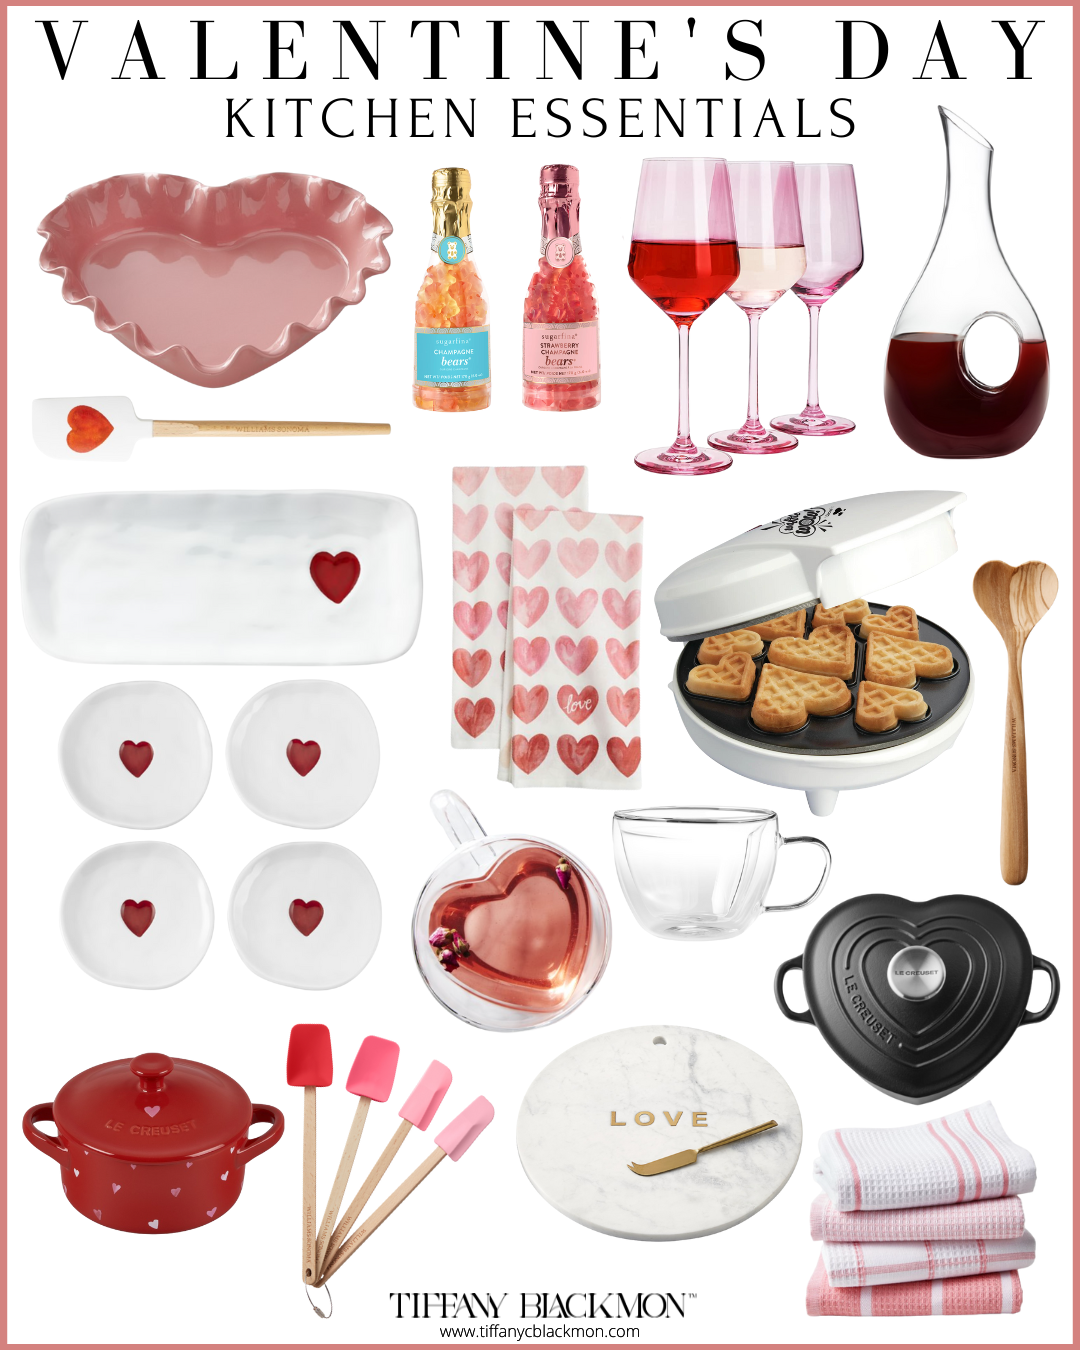 Valentine's Day Kitchen Essentials
#dinnerin #recipes #valentinesday #valentines #cooking #kitchenessentials #chef #datenight #dinner 